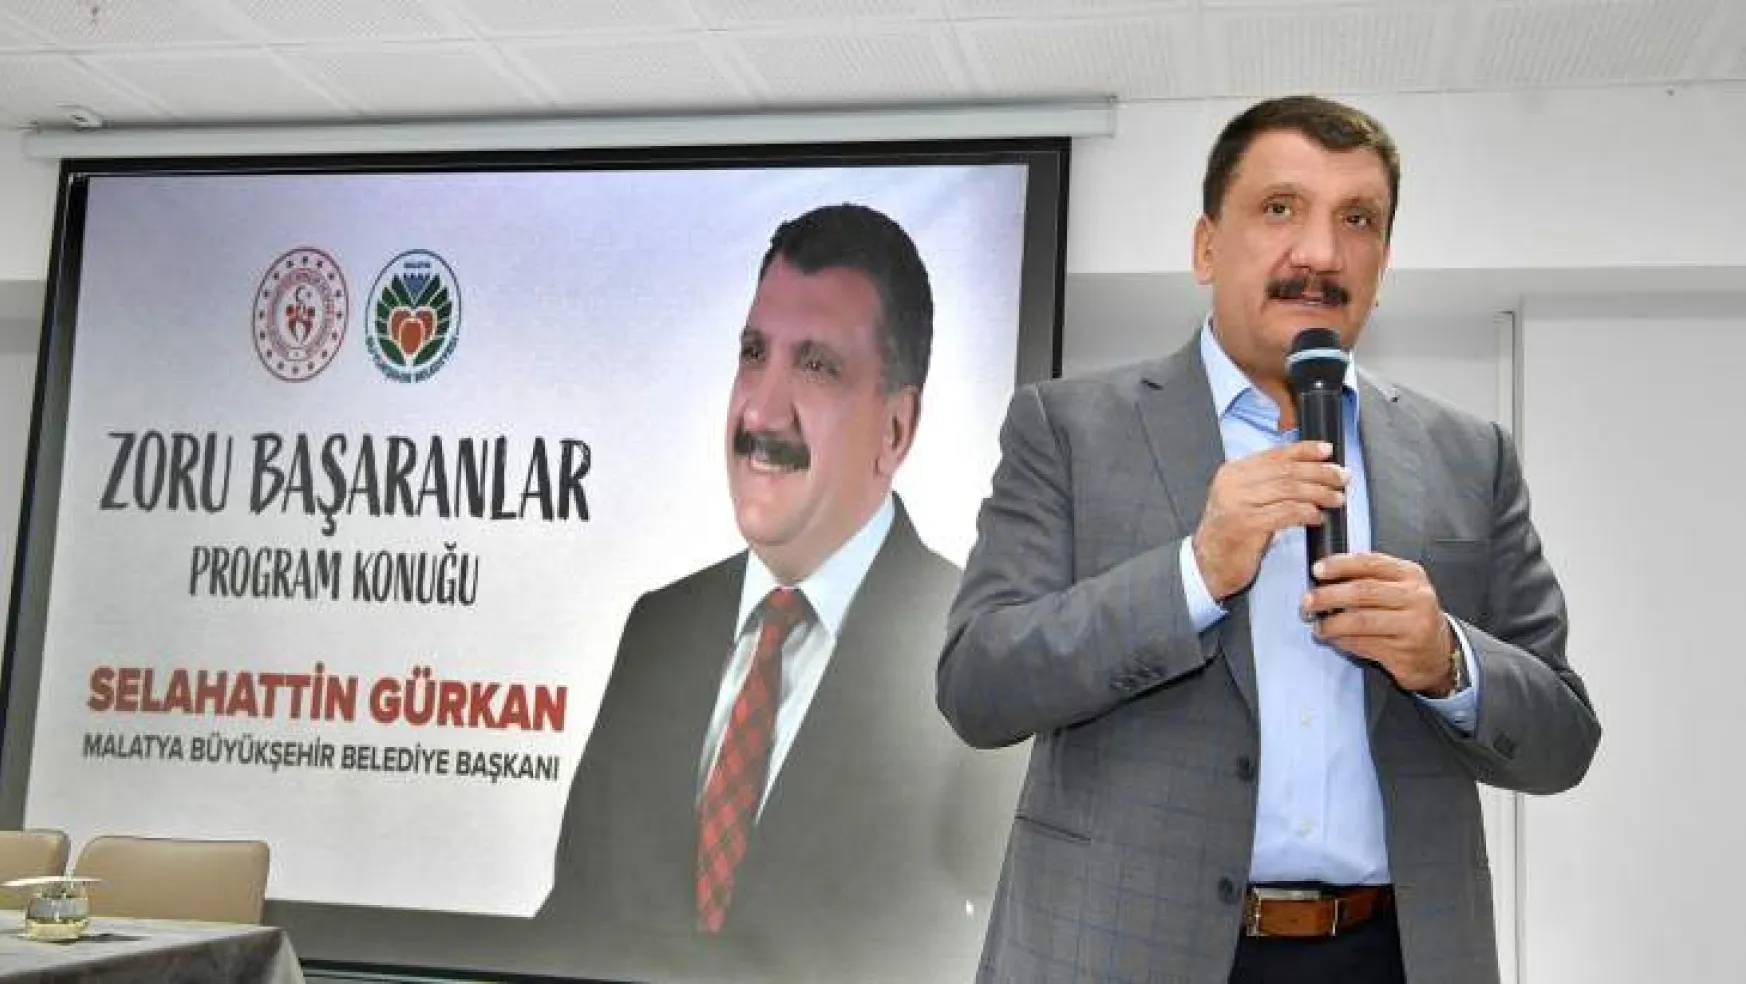 Zoru Başaranlar' Programının Konuğu  Başkan Gürkan